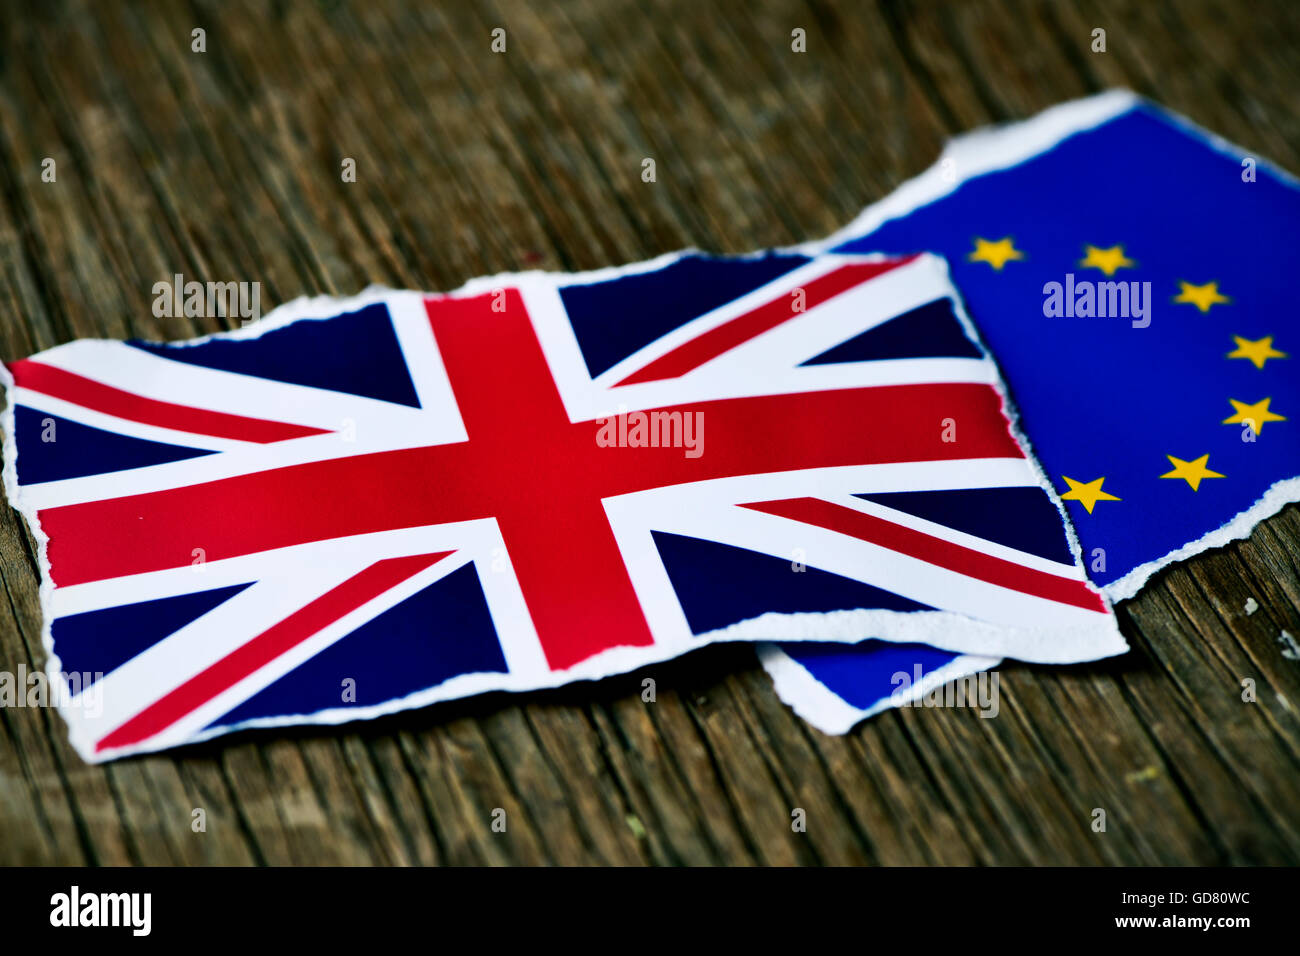 Le drapeau de la Communauté européenne et le pavillon du Royaume-Uni réunis sur une surface en bois rustique Banque D'Images